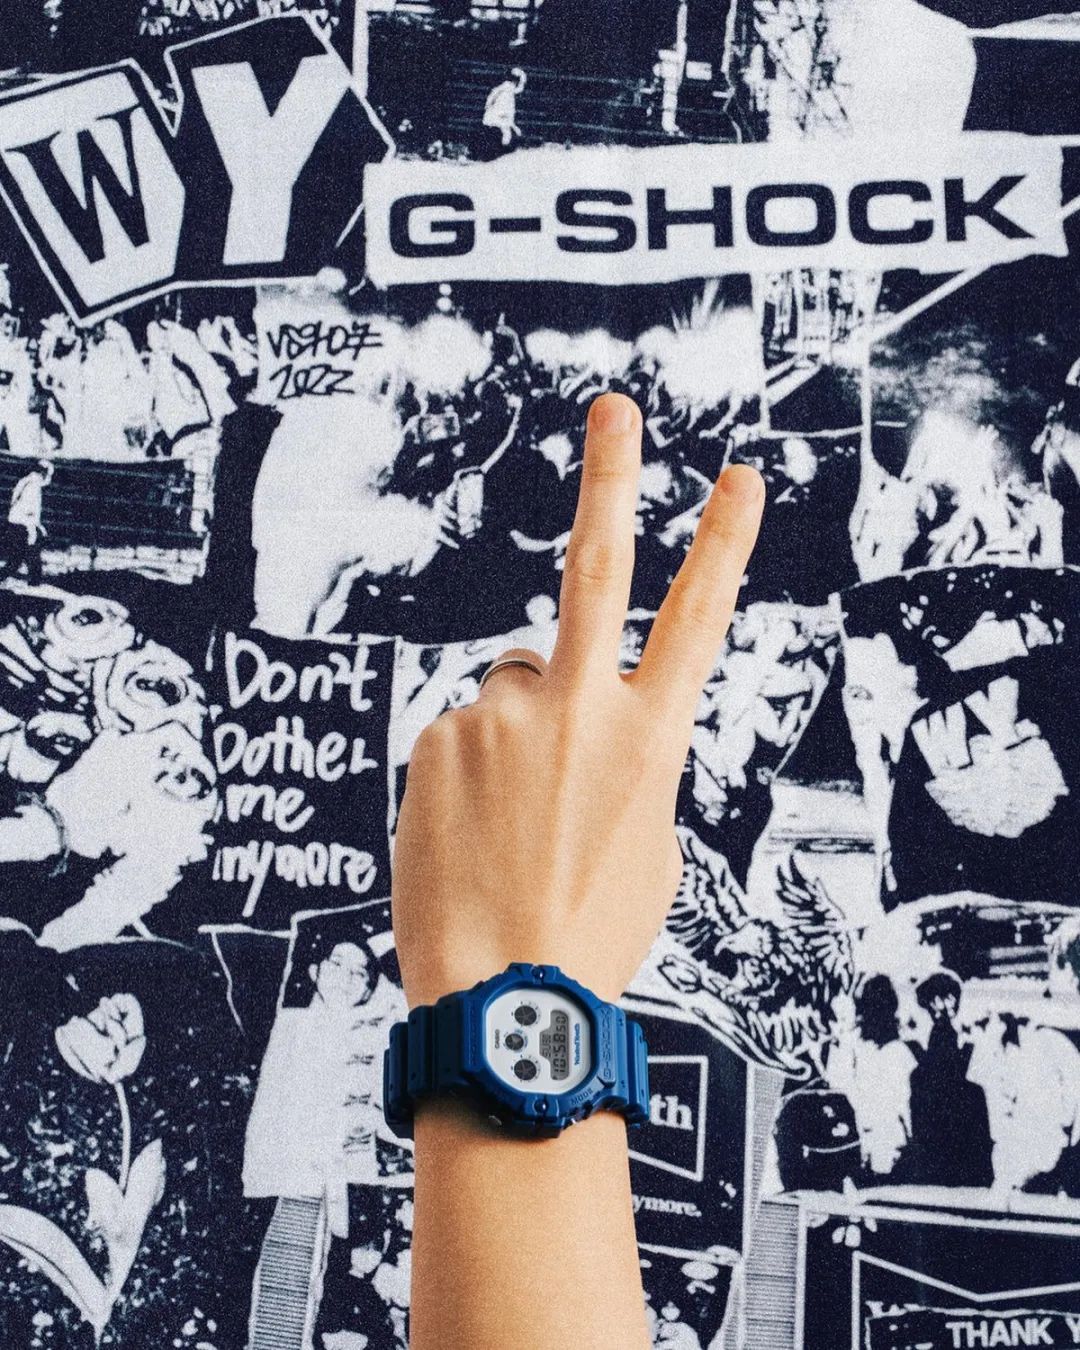 日本潮流品牌Wasted Youth与卡西欧手表旗下品牌G-Shock合作，推出联名 